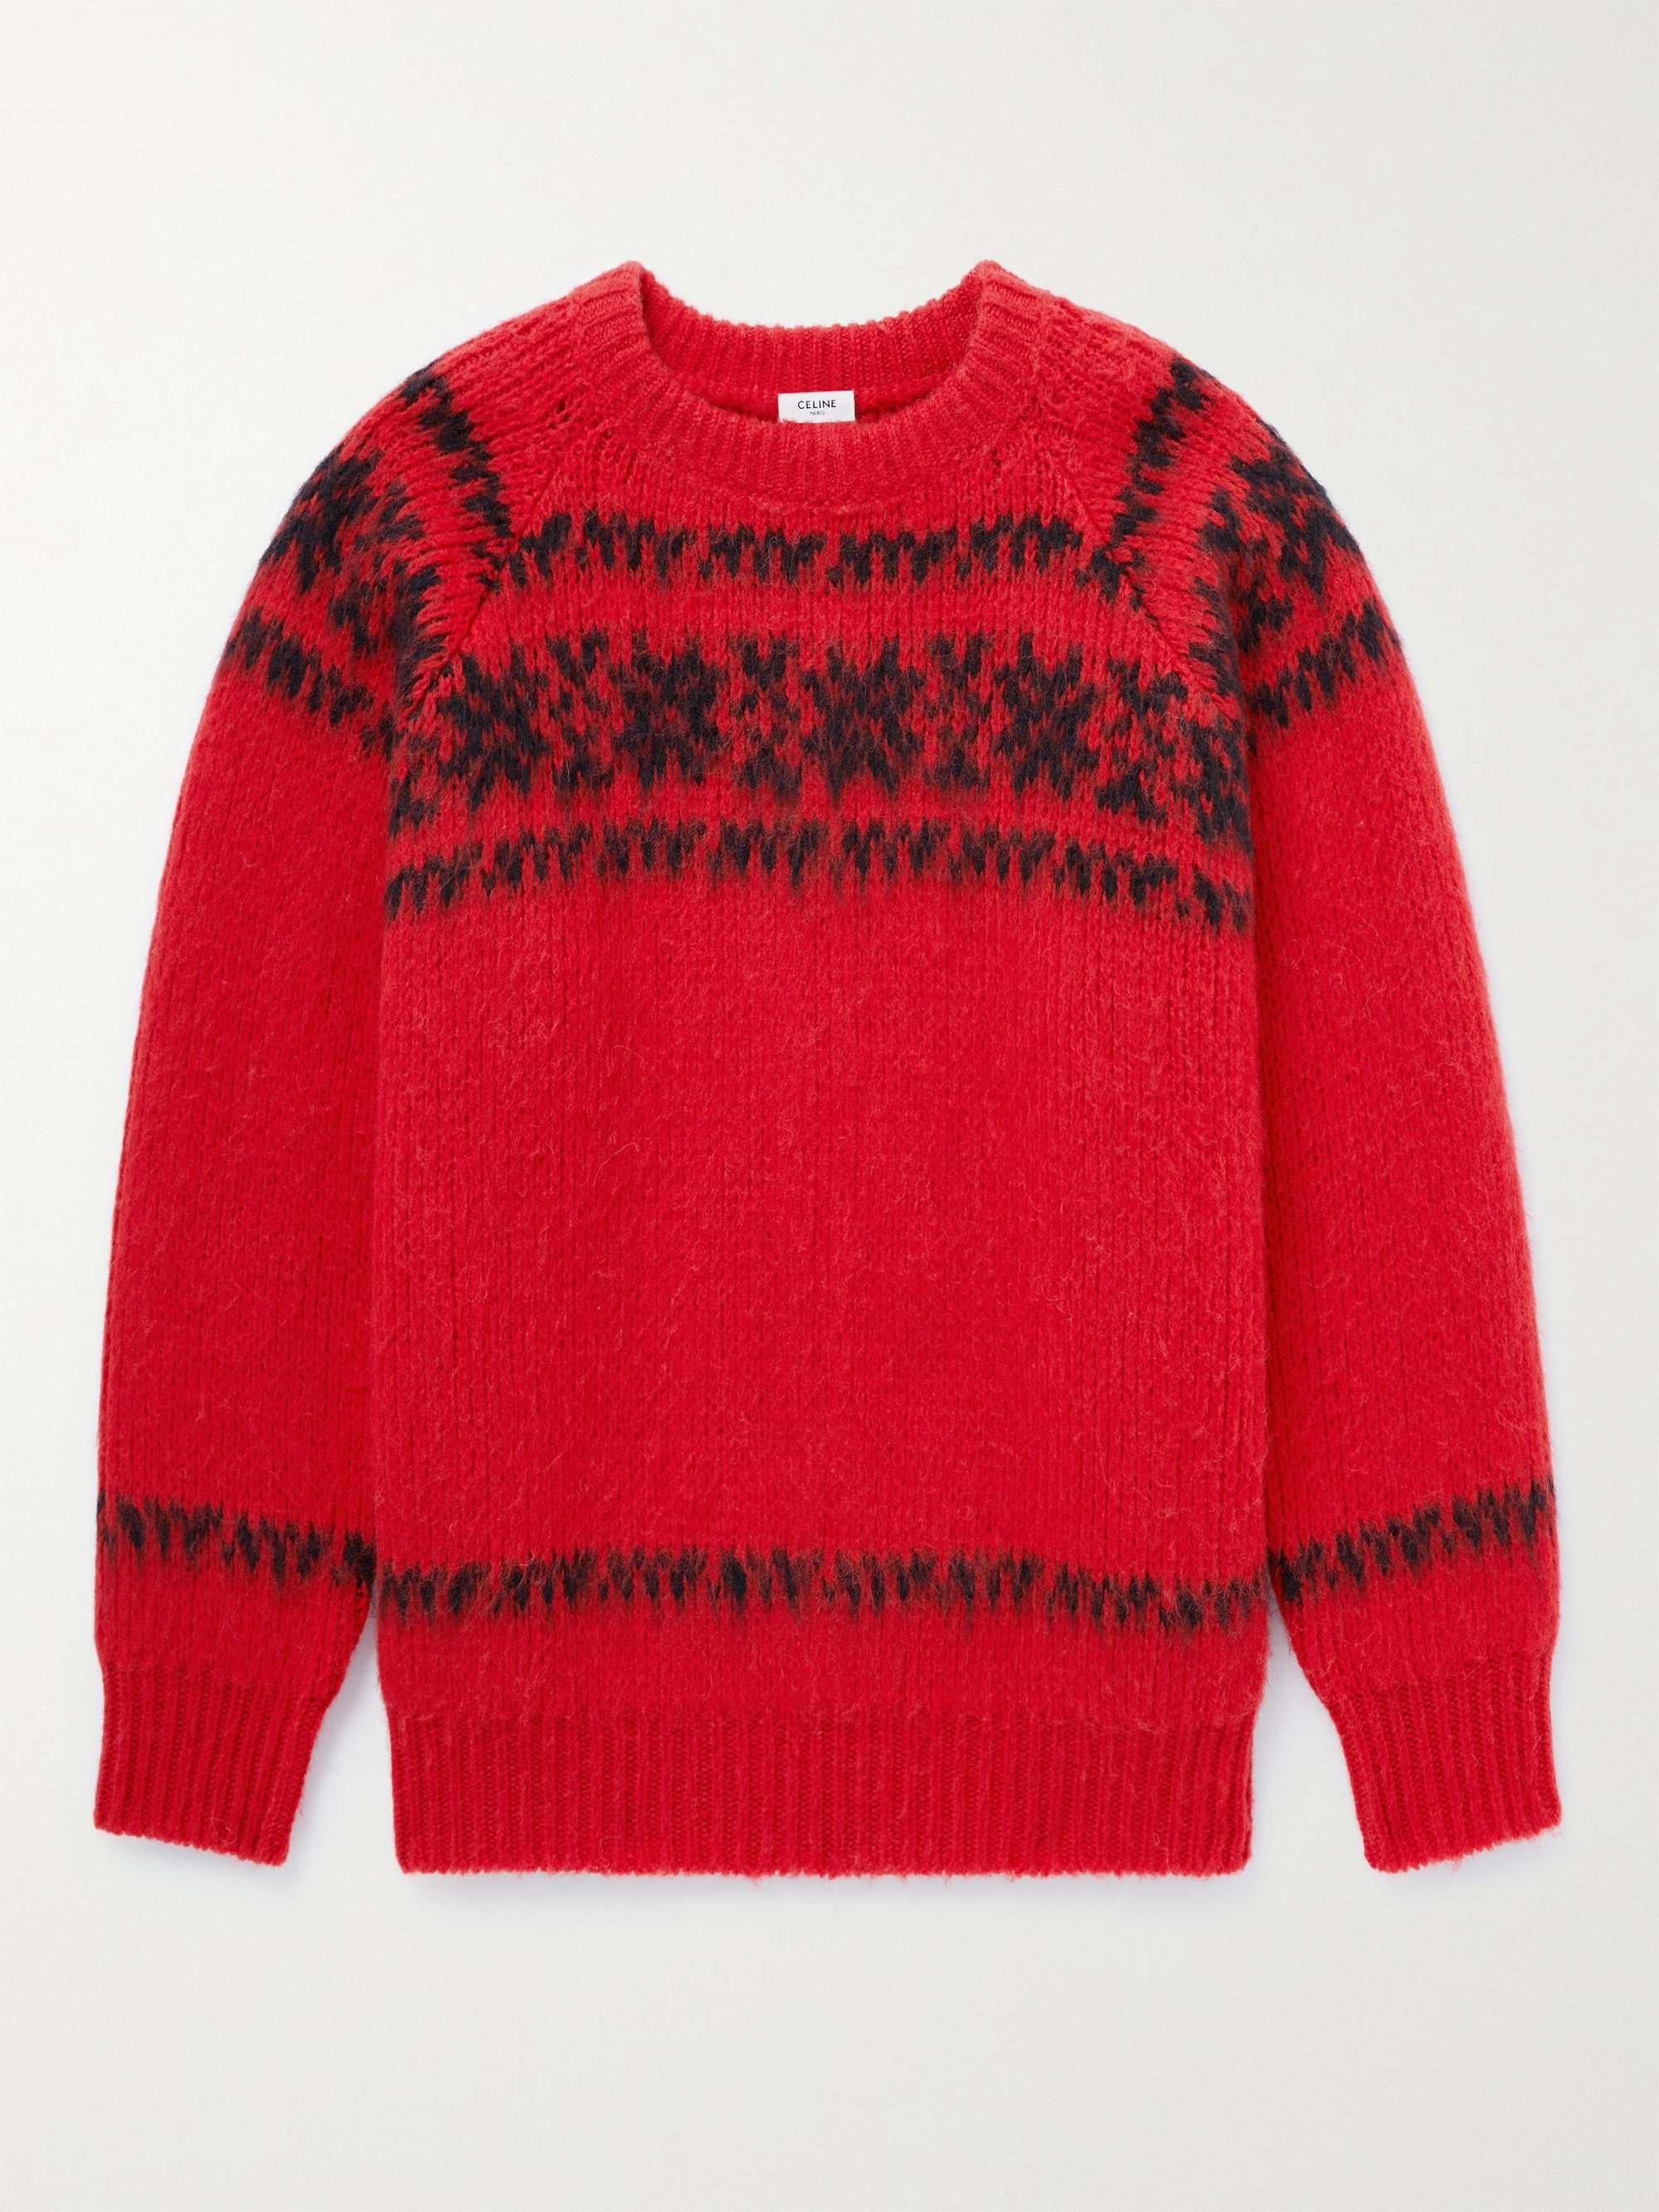 셀린느 옴므 페어아일 울 스웨터  CELINE HOMME Fair Isle Wool-Jacquard Sweater,Red